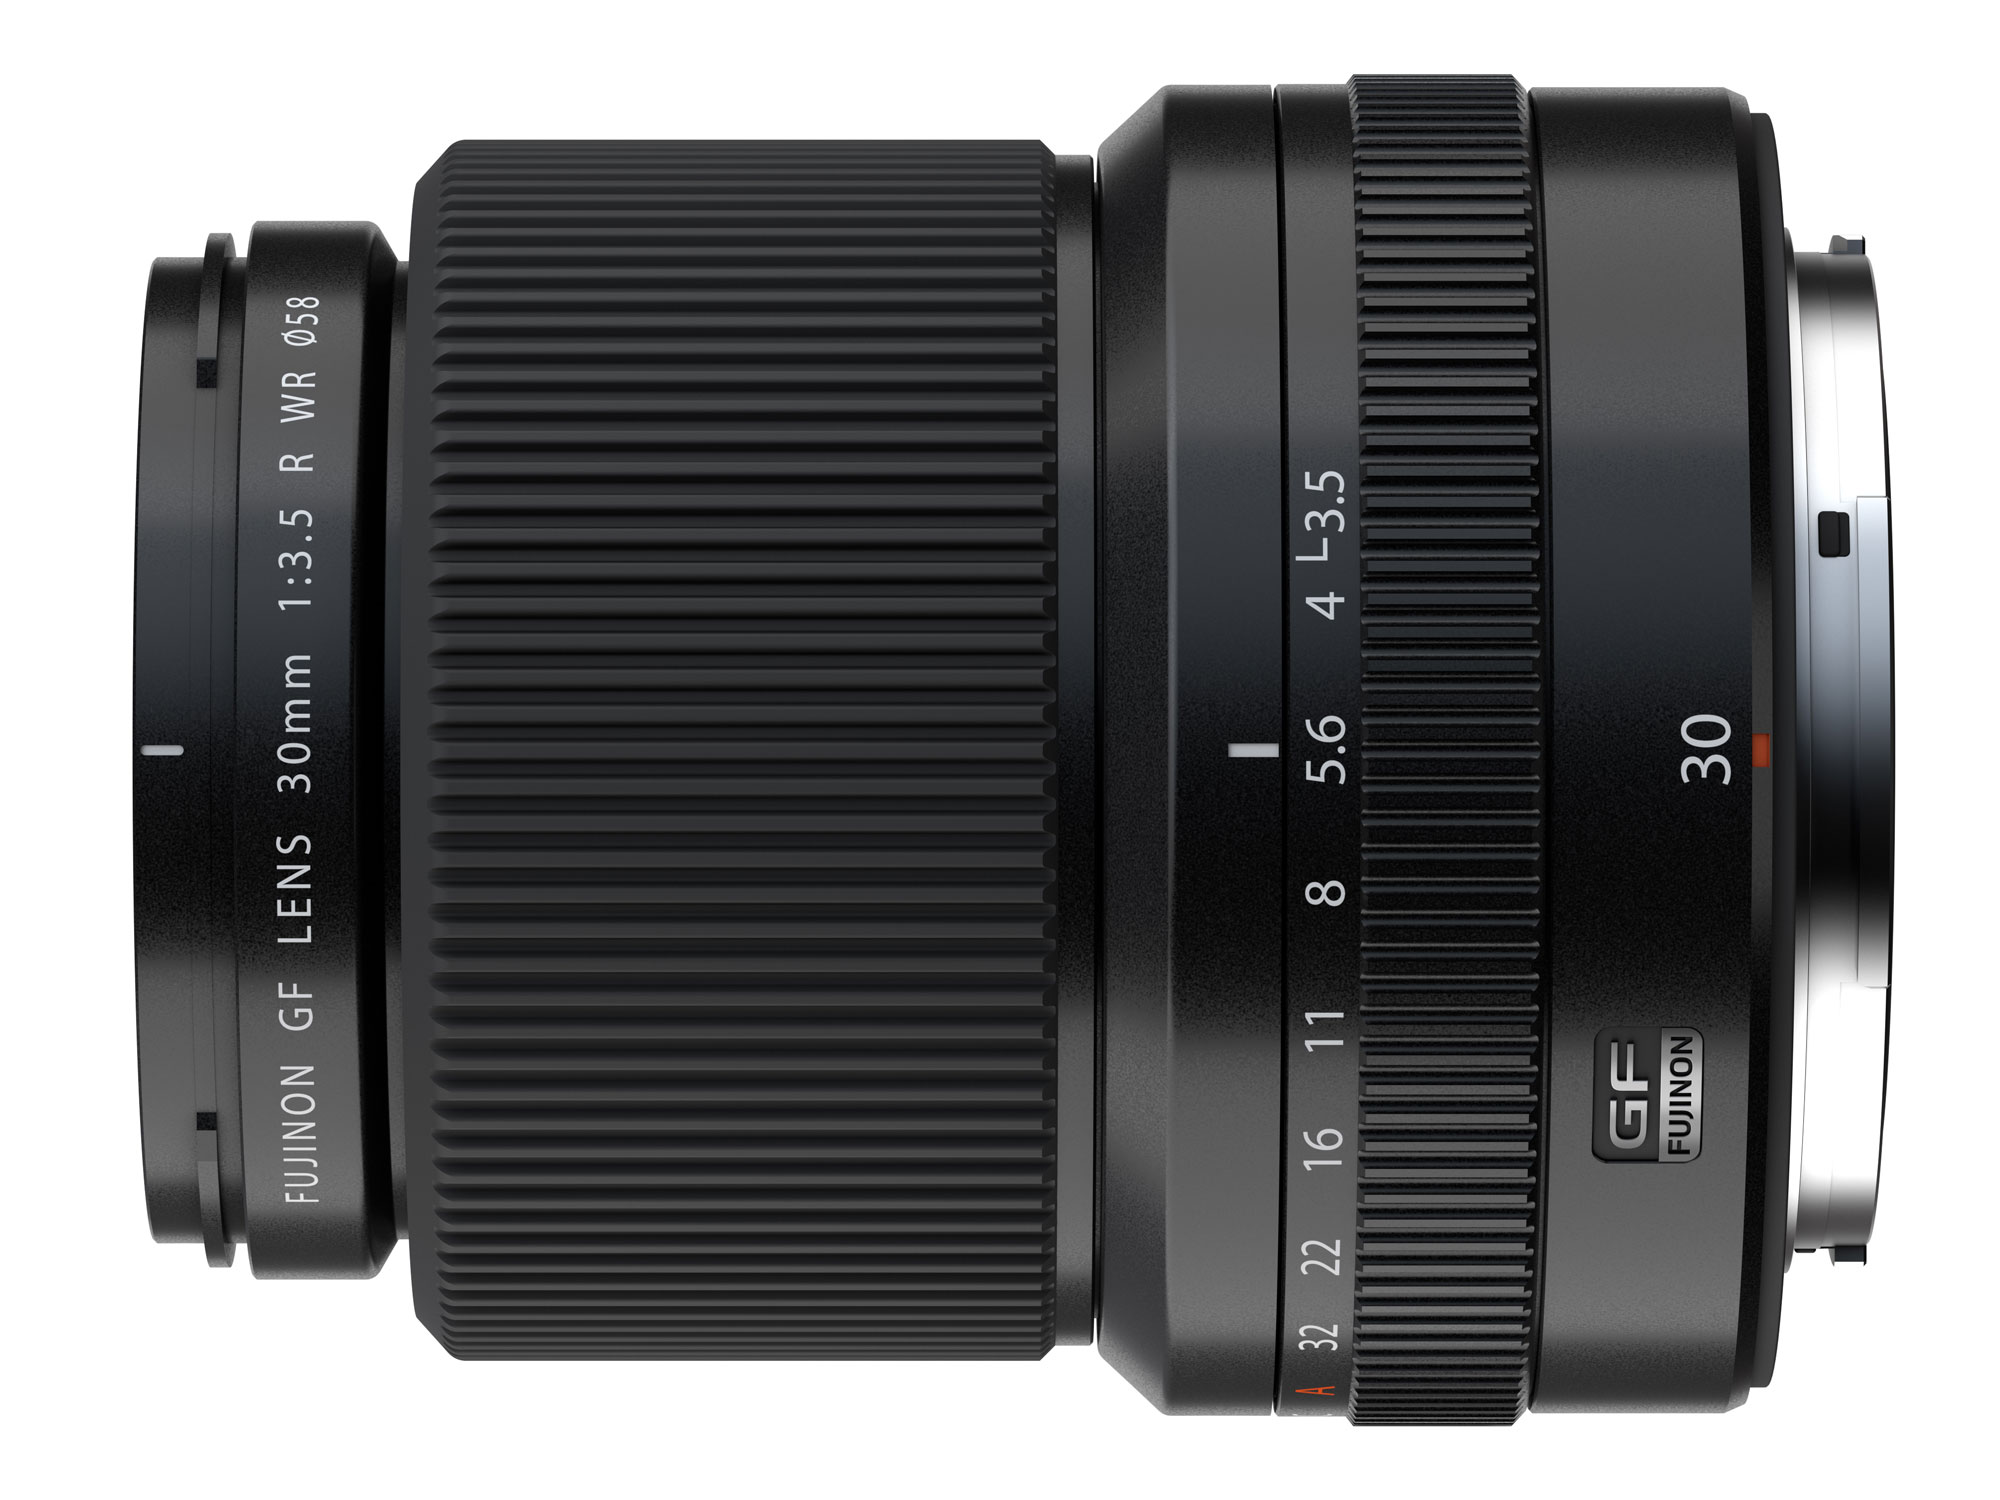 Fujifilm ra mắt ống kính GF 30mm F3.5 R WR dành cho ngàm GF, giá 1699 USD